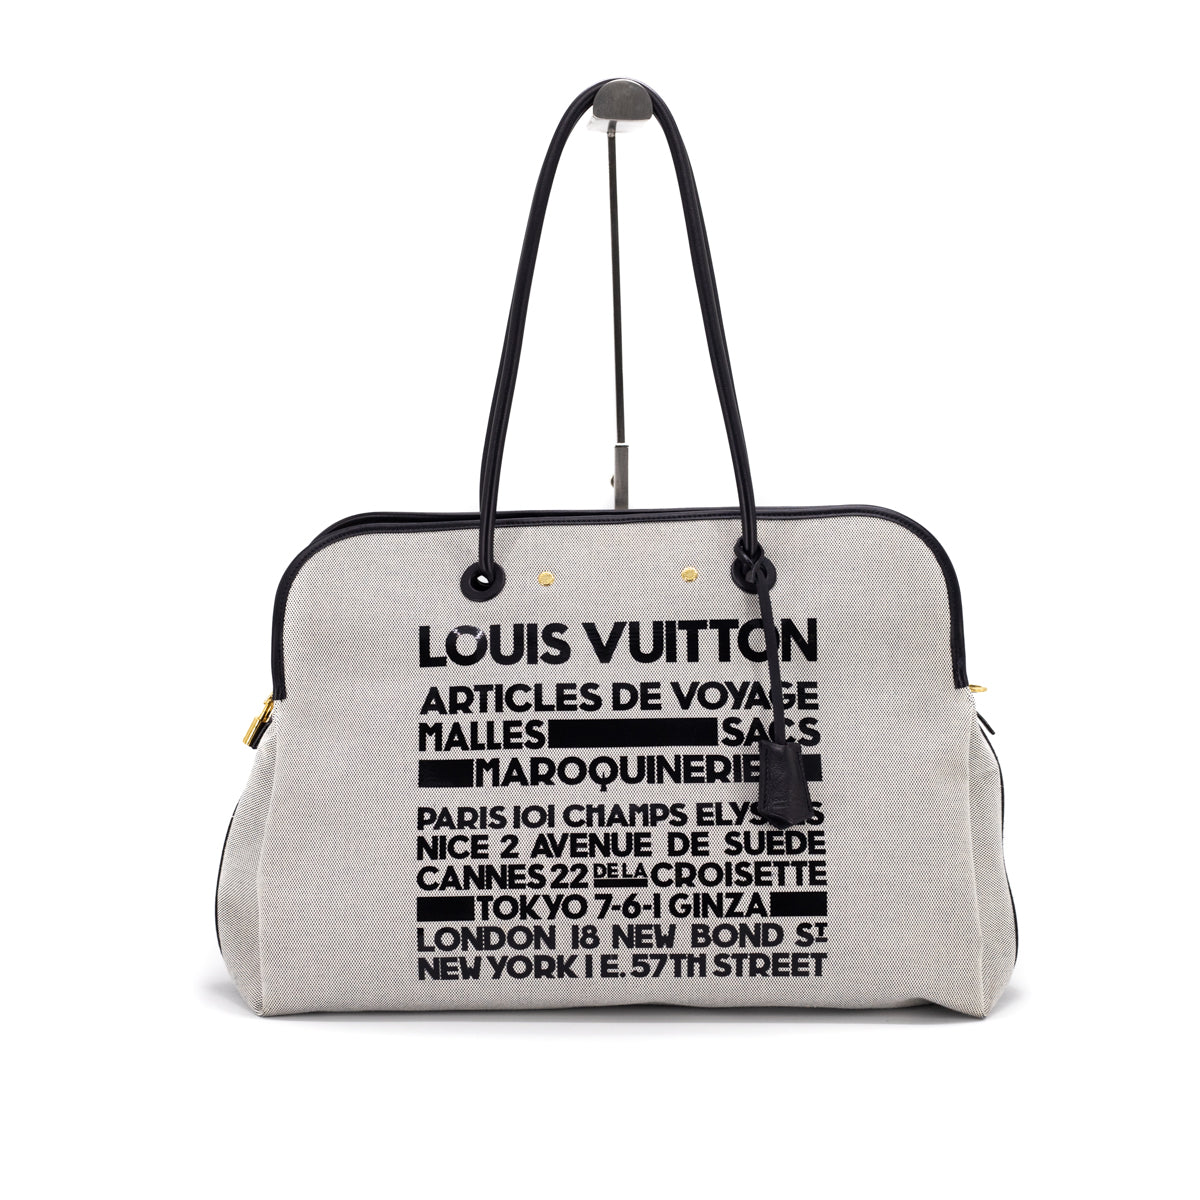 Louis Vuitton Articles De Voyage Canvas Baggage Size